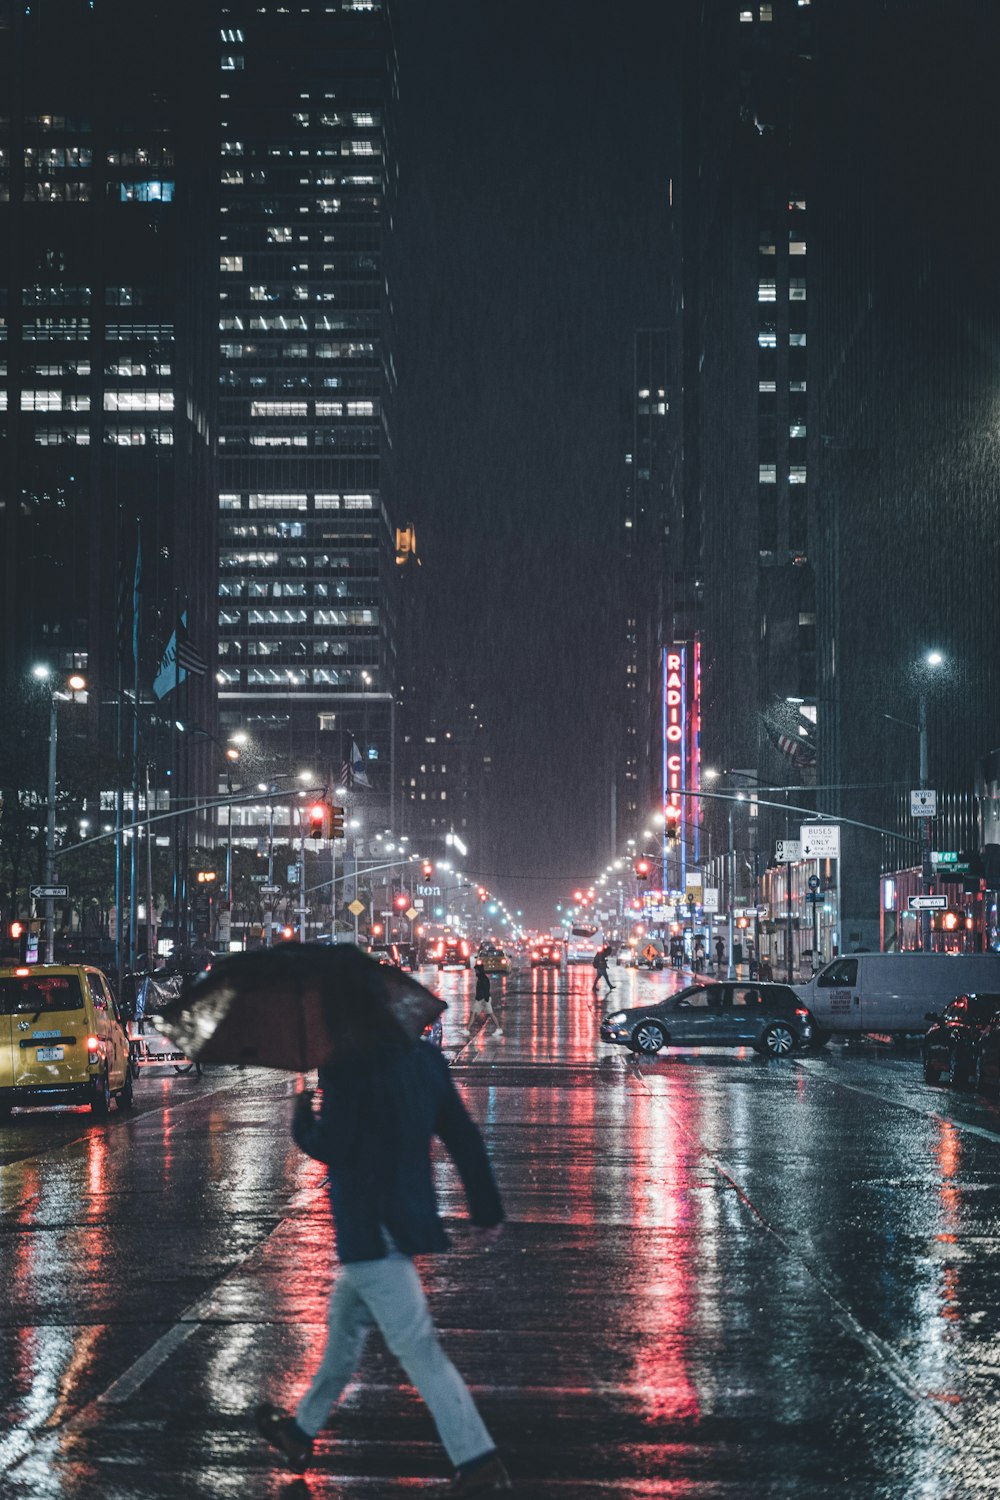 man crossing on road under umbrella